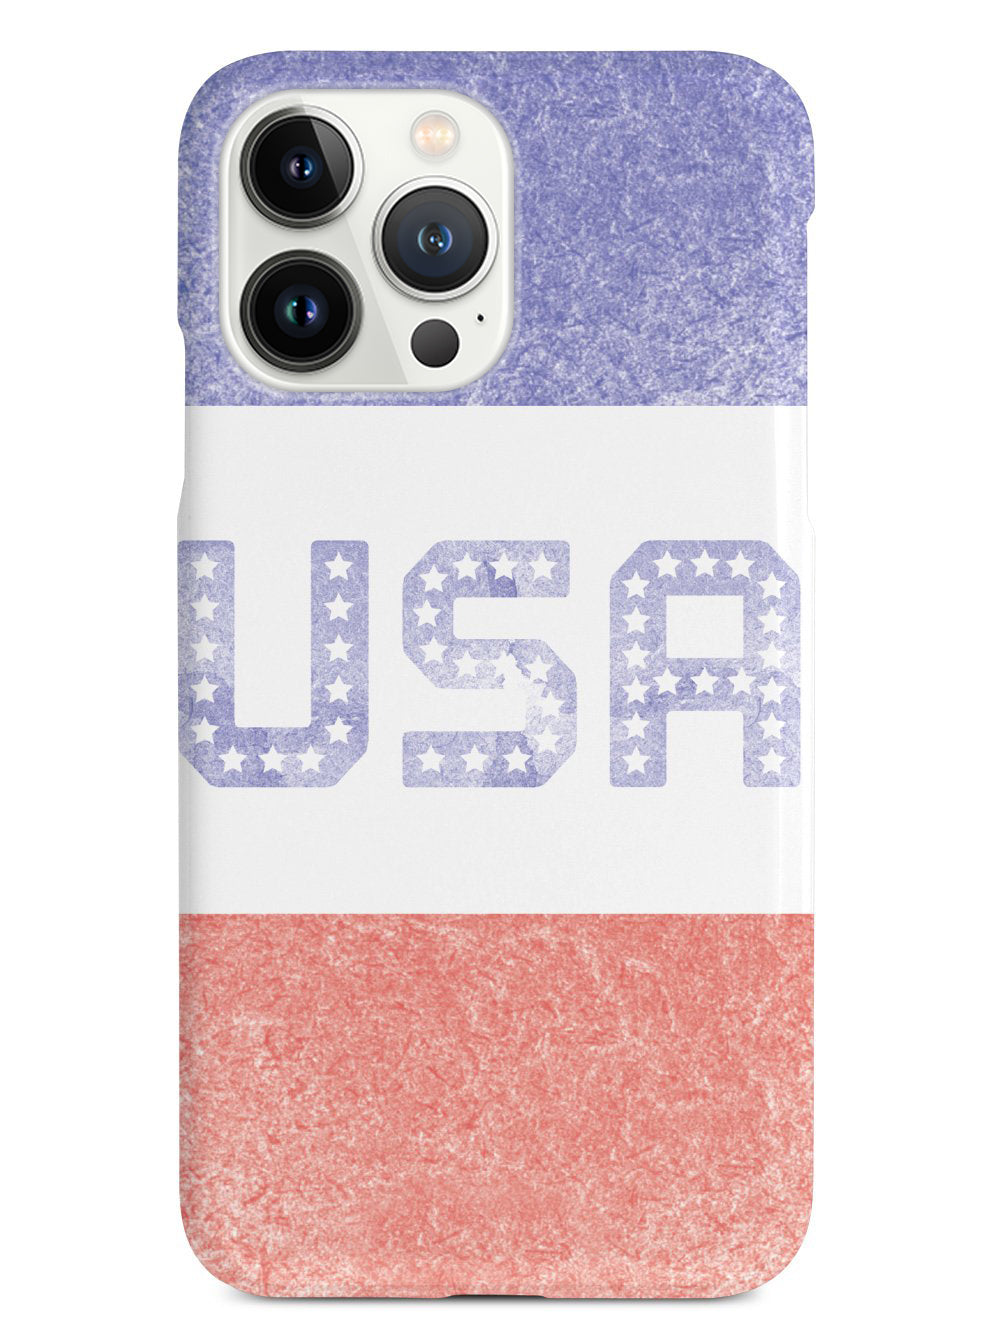 Team USA - Patriotic Case